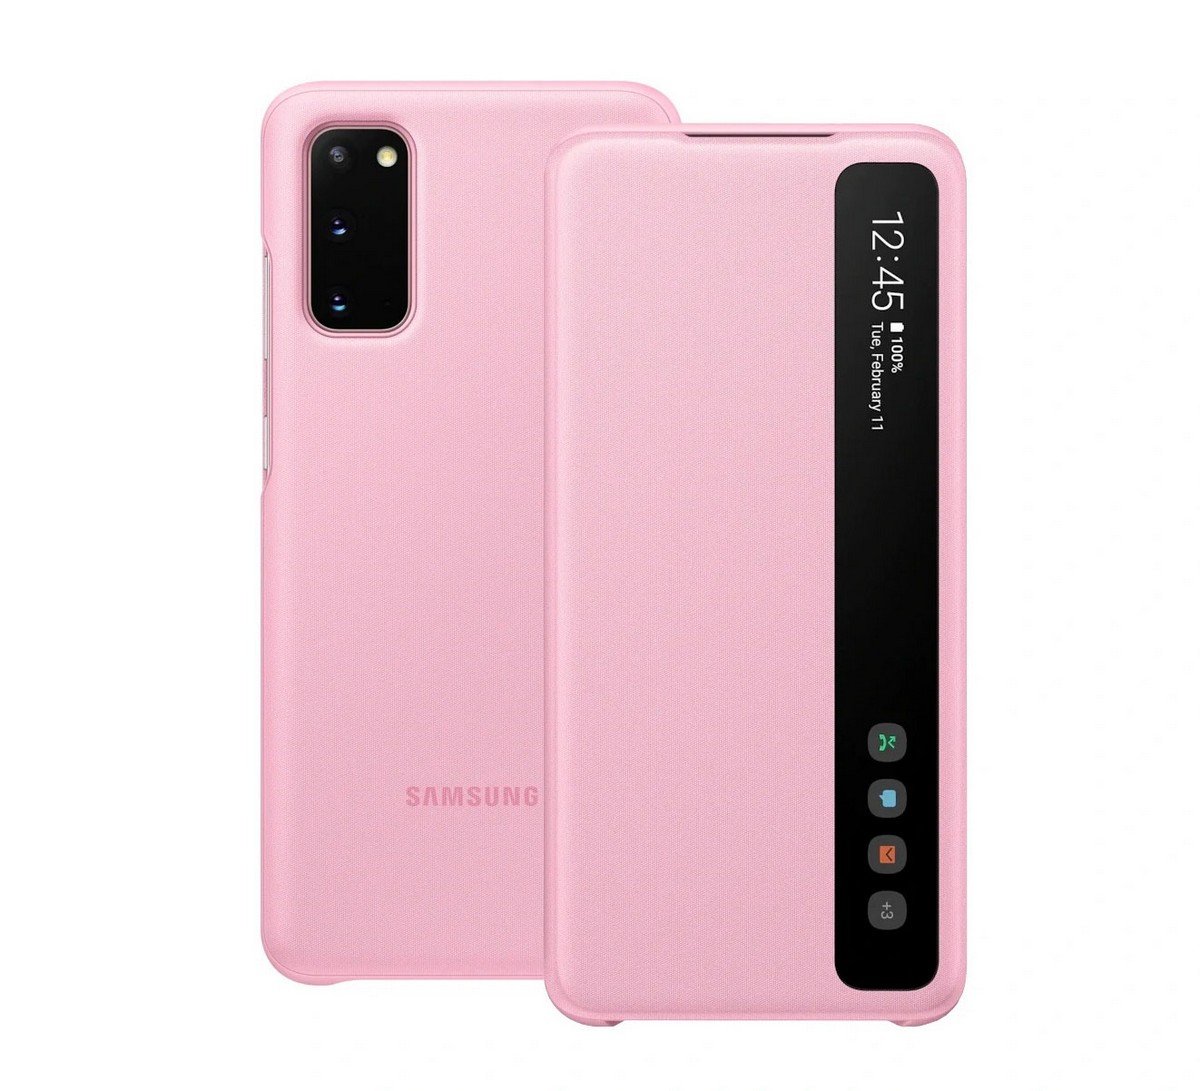 Etui Samsung Clear View Cover Pink do Galaxy S20 EF-ZG980CPEGEU. Lżejszy i wygodniejszy.